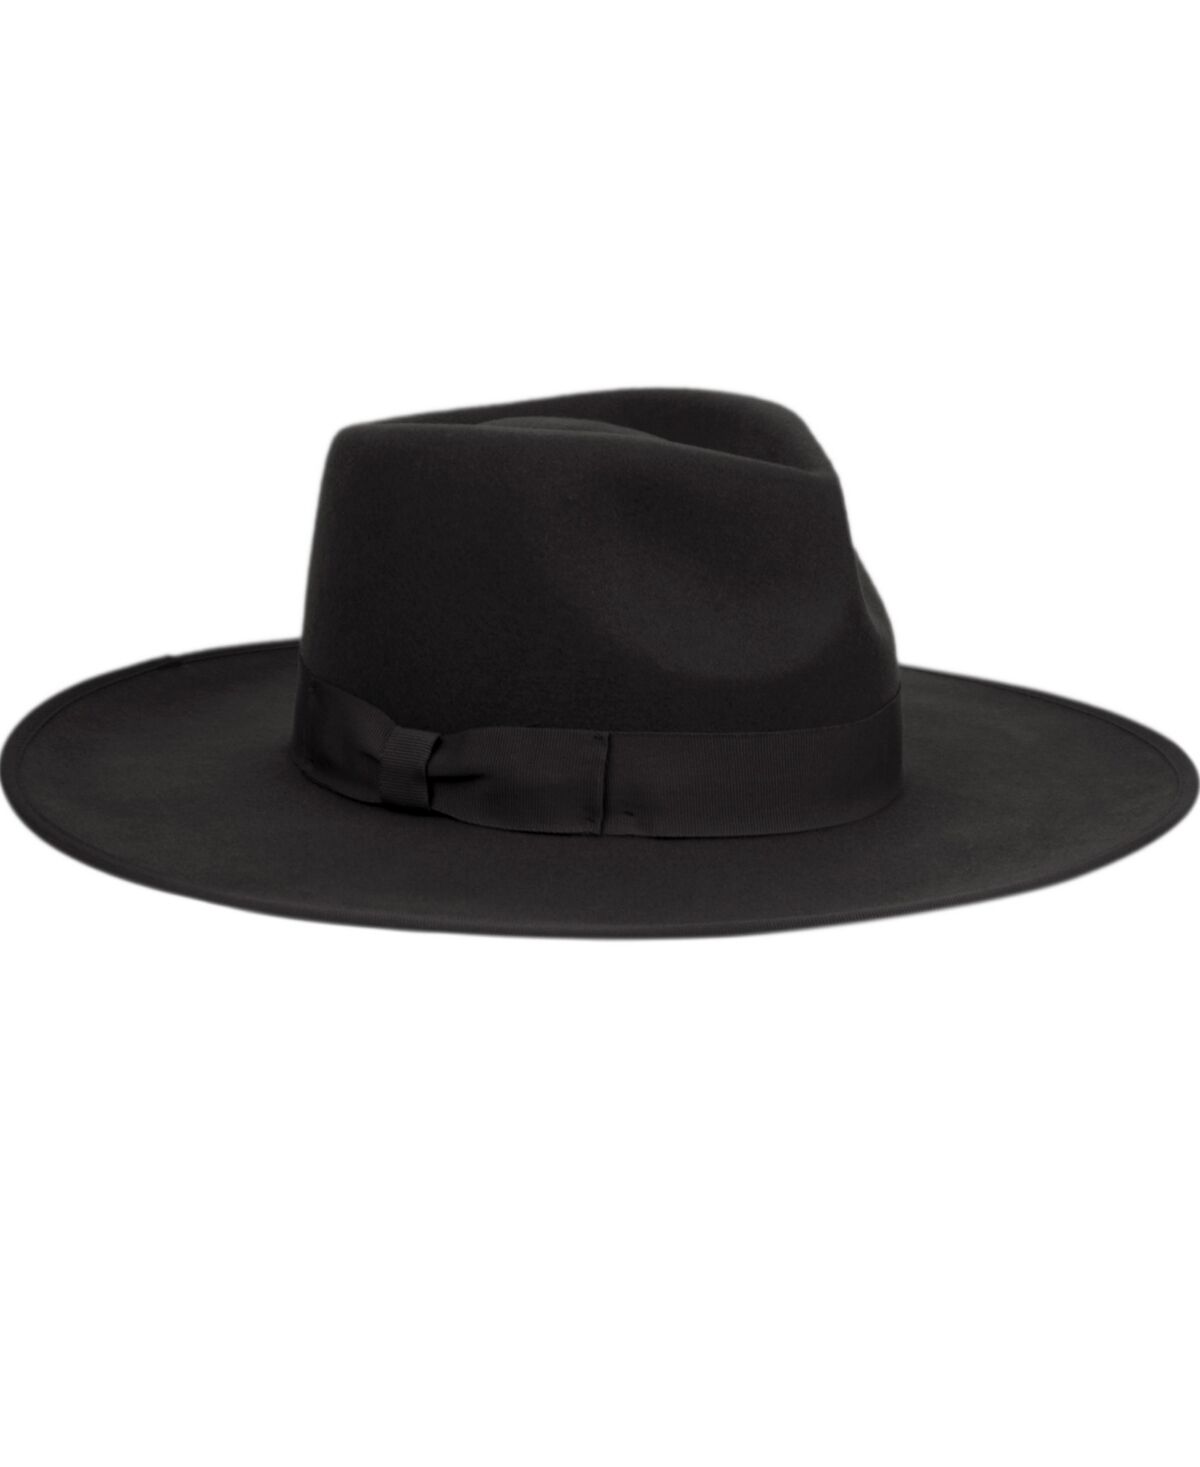 Angela & William Women's Wide Brim Felt Rancher Fedora Hat - Black